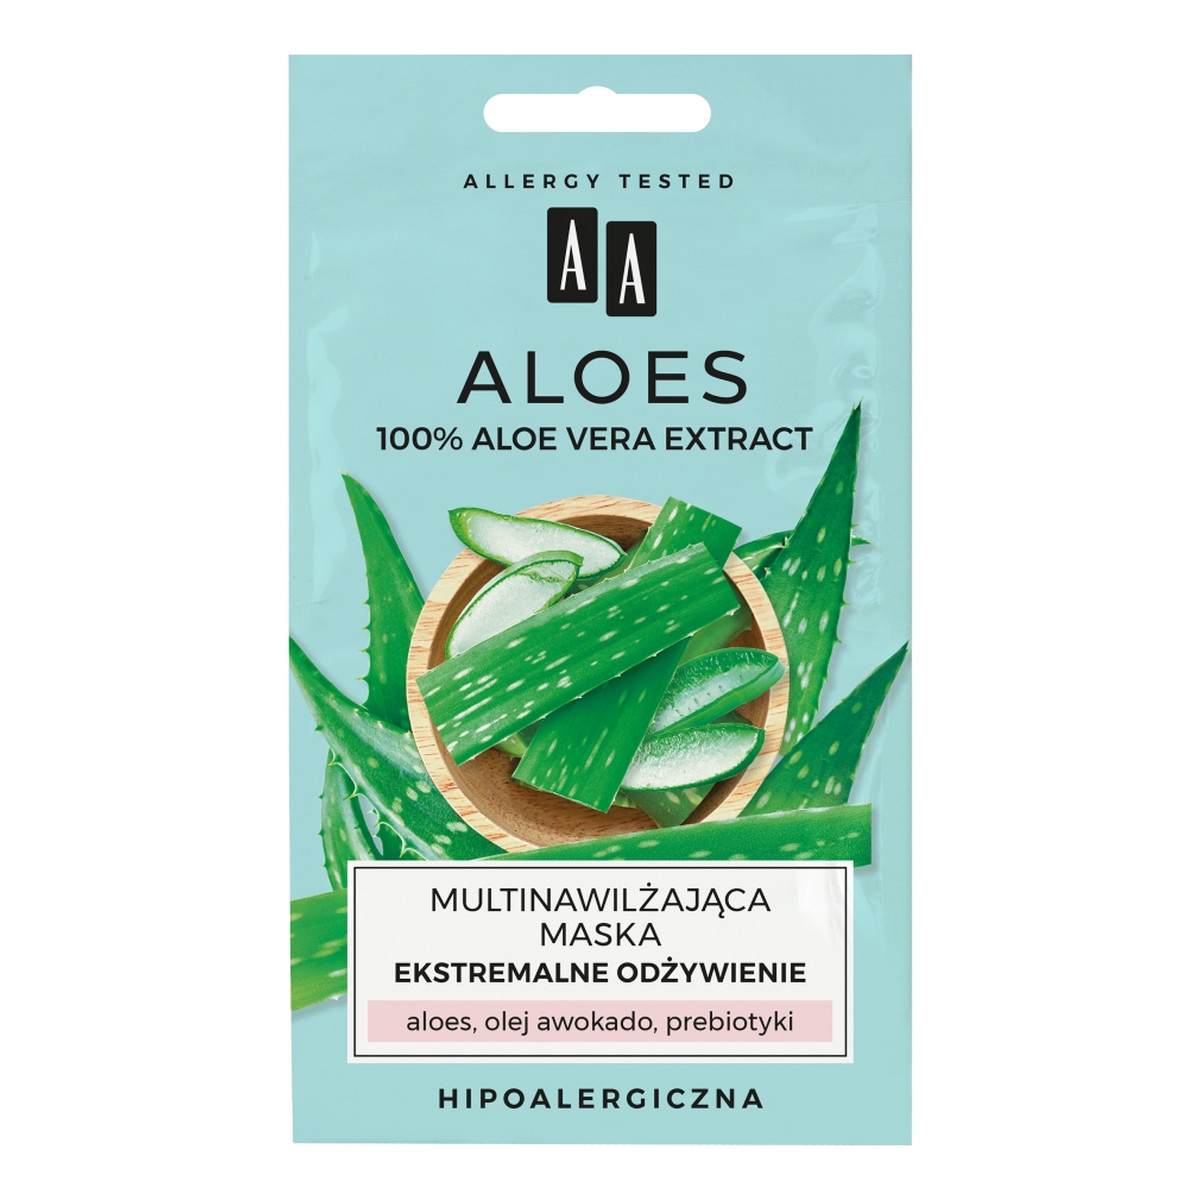 AA Aloes multinawilżająca maska ekstremalne odżywienie 2x4ml 8ml